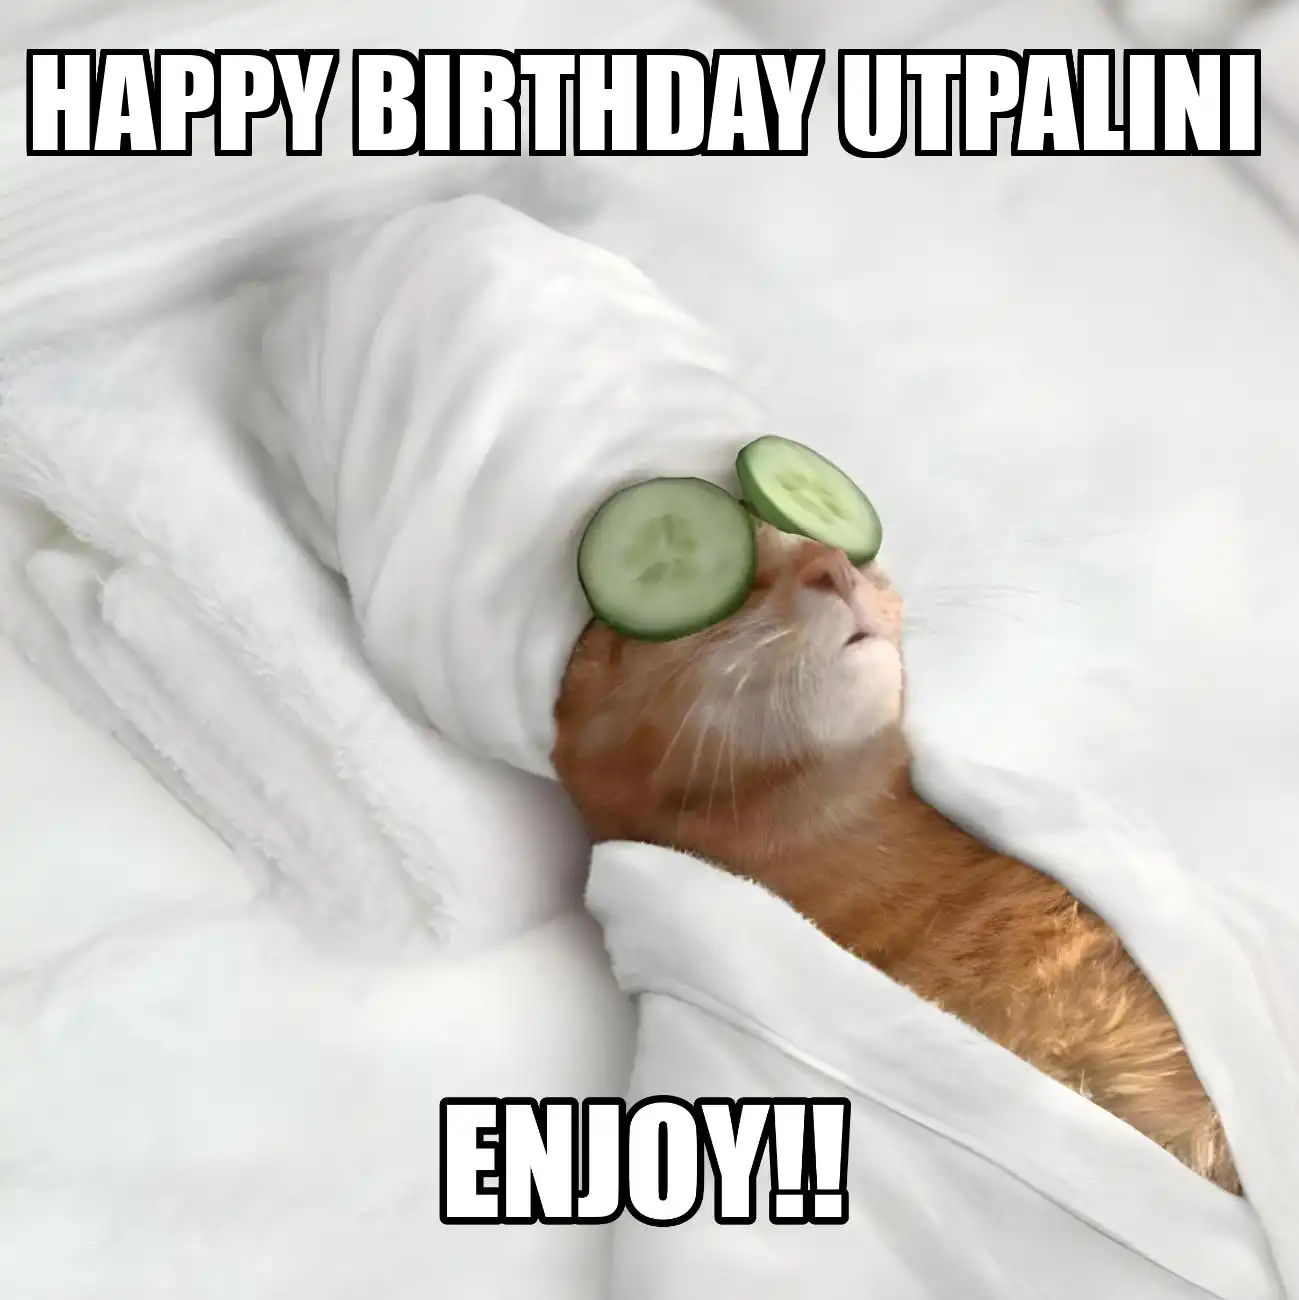 Happy Birthday Utpalini Enjoy Cat Meme